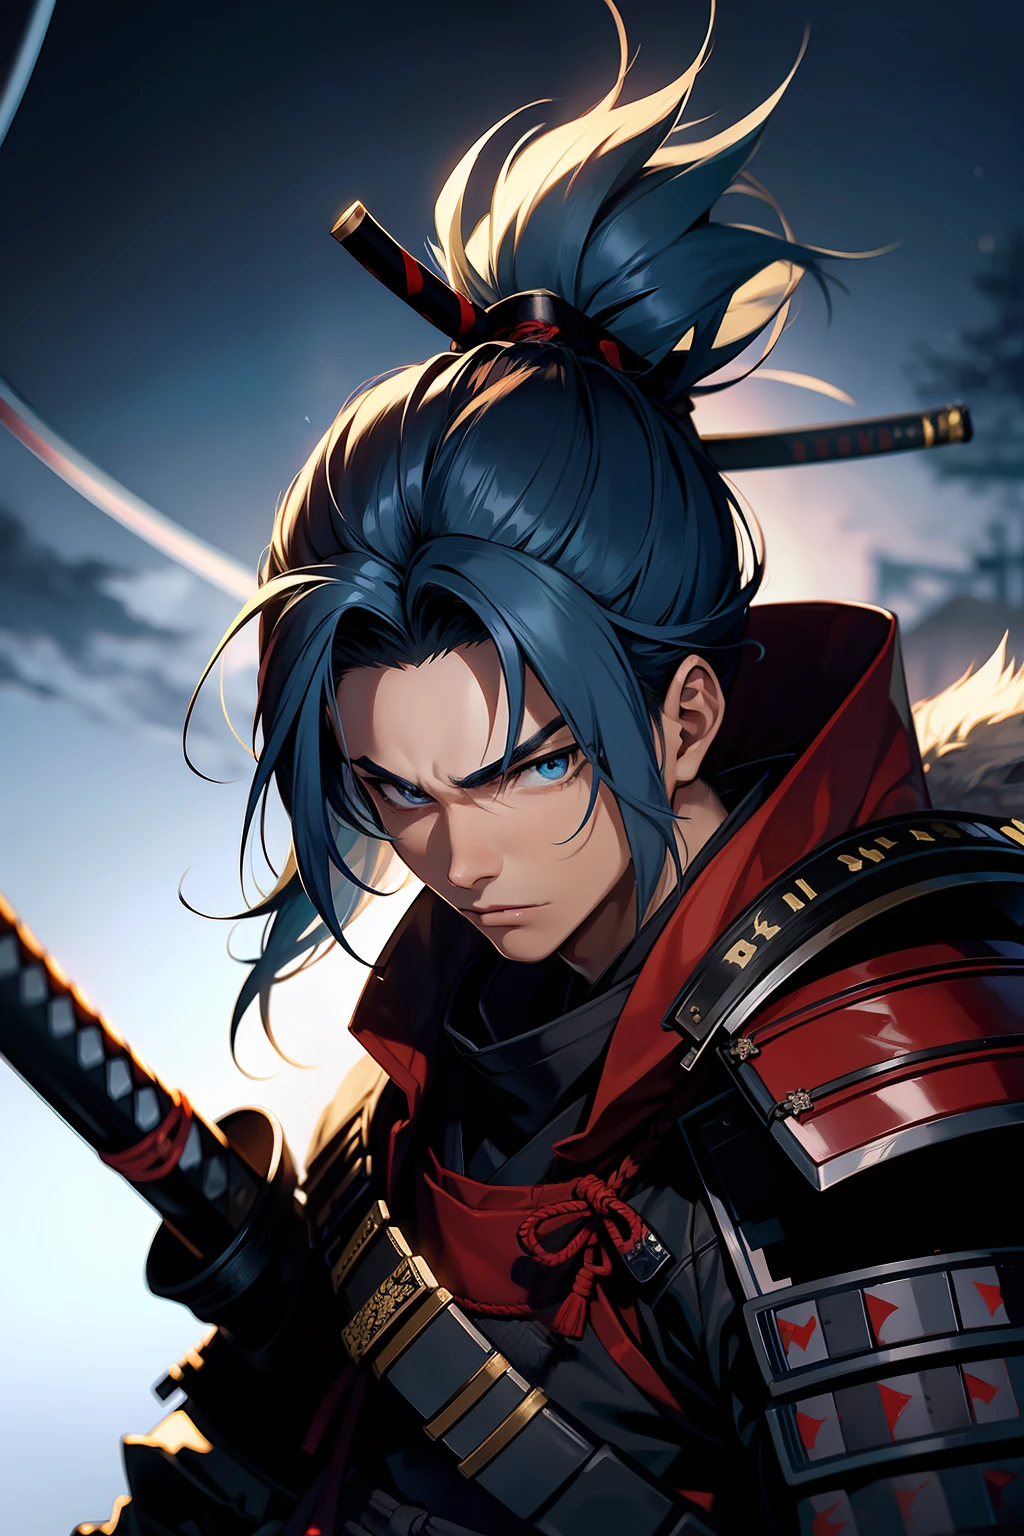 Jovem samurai, homem jovem, corte de cabelo rabo de cavalo, cabelo azul, armadura de samurai, Katana na mão, Japão feudal